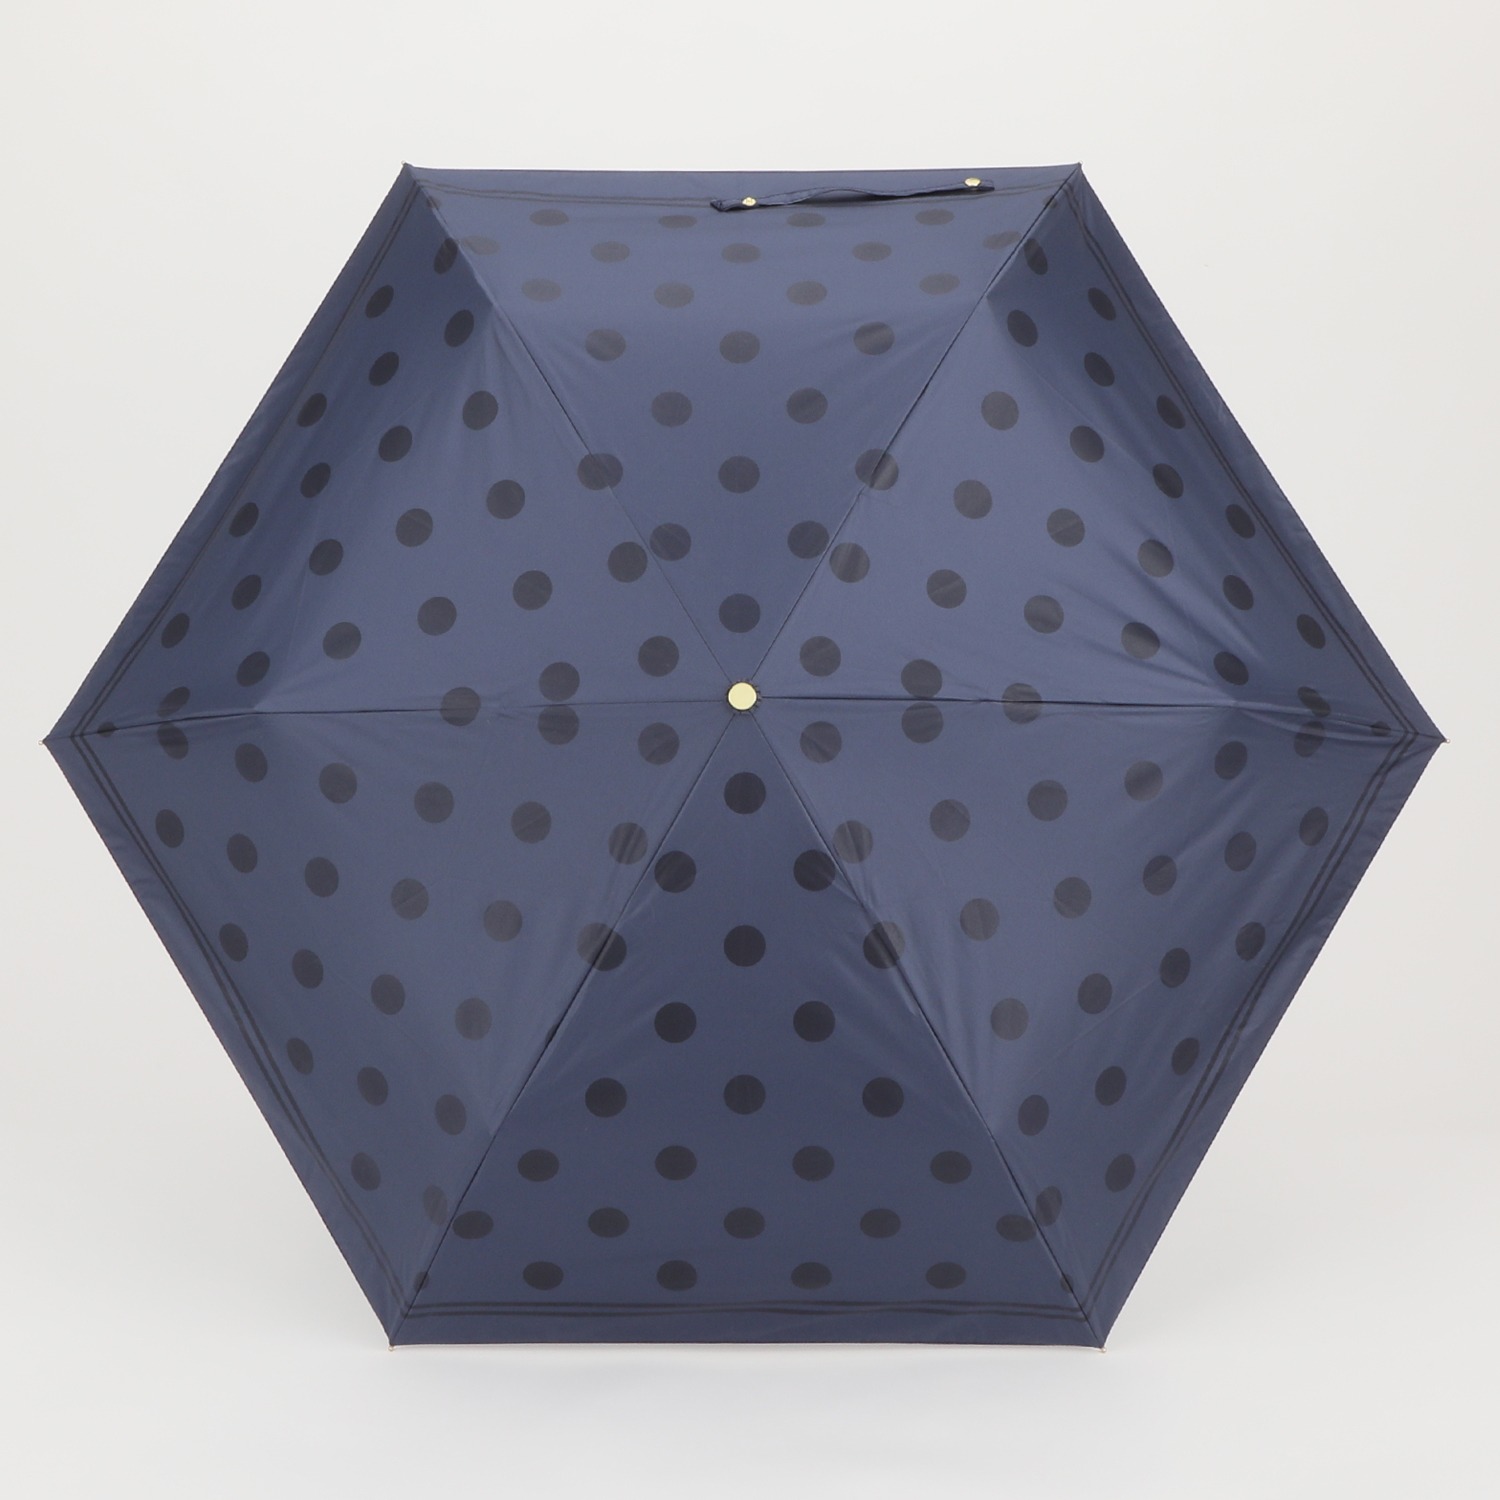 イザック 晴雨兼用 折りたたみ傘